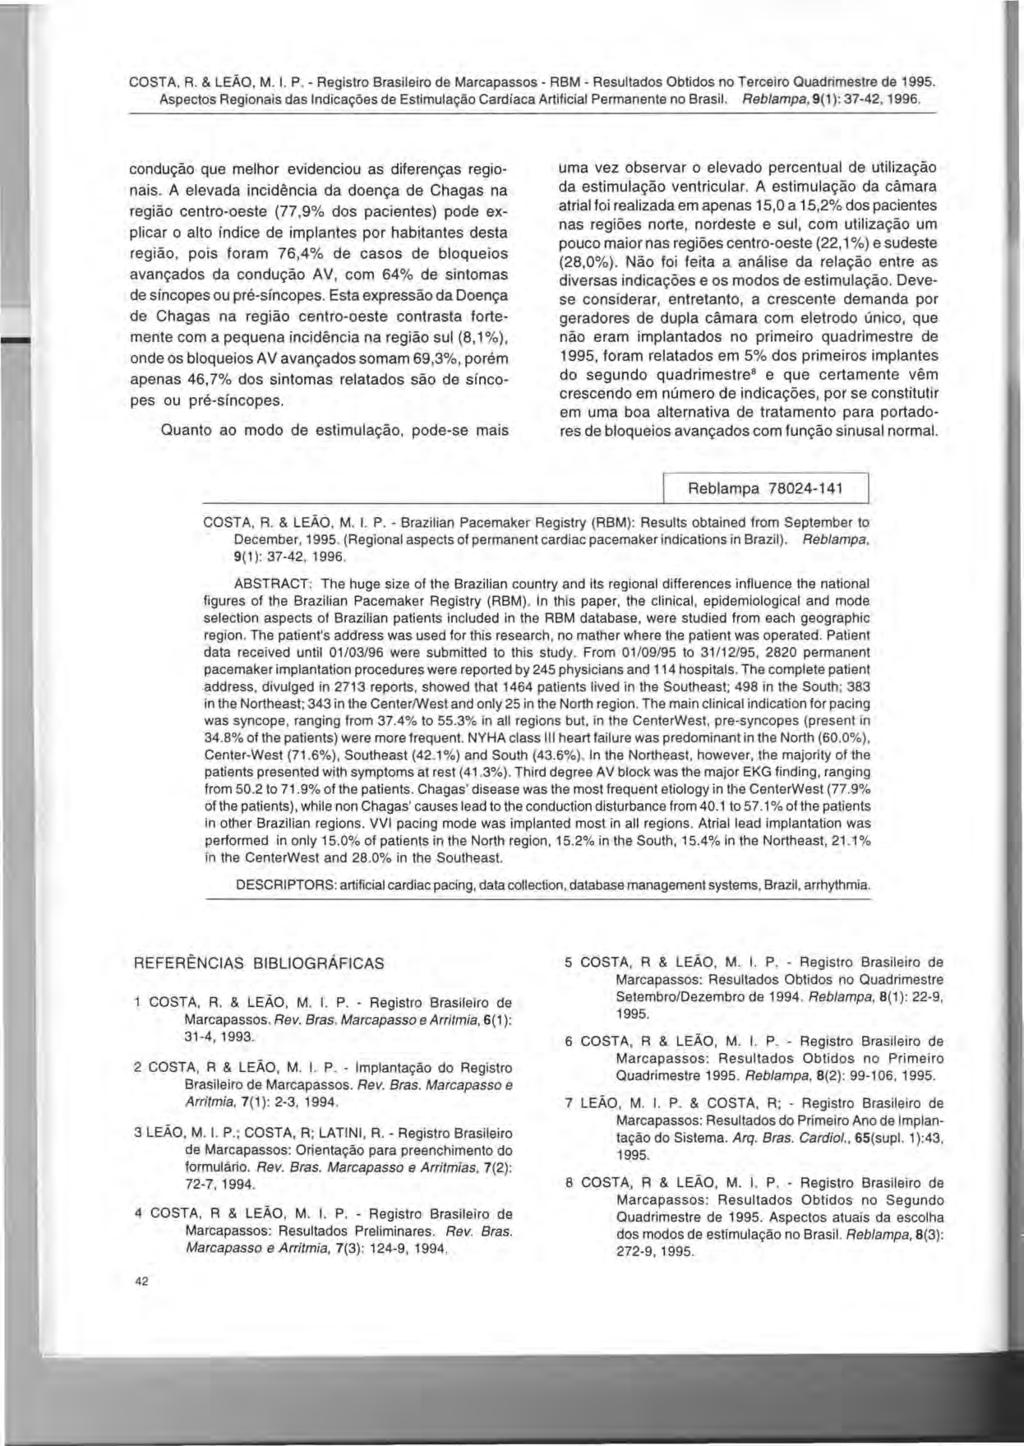 COSTA, R & LEAO, M I P - Registro Brasileiro de Marcapassos - RBM - Resultados Obtidos no Terceiro Ouadrimestre de 1995 Aspectos Regionais das Indicactoes de Estimulactao Cardfaca Artificial